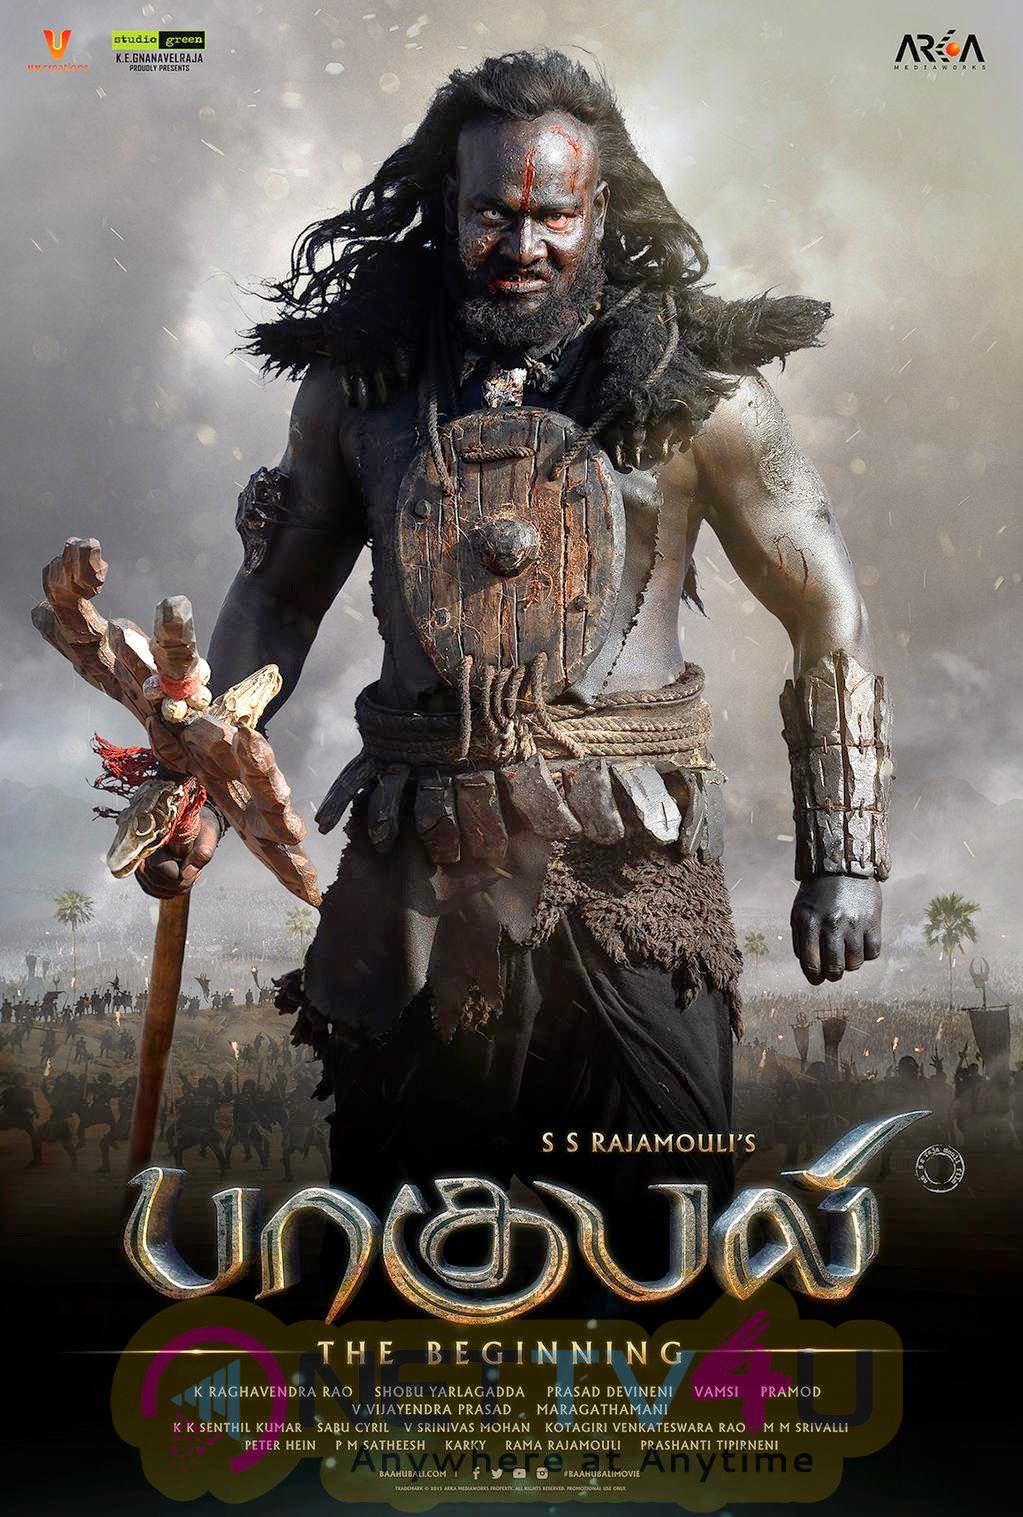 Prabhakar Telugu Actor In Bahubali - HD Wallpaper 